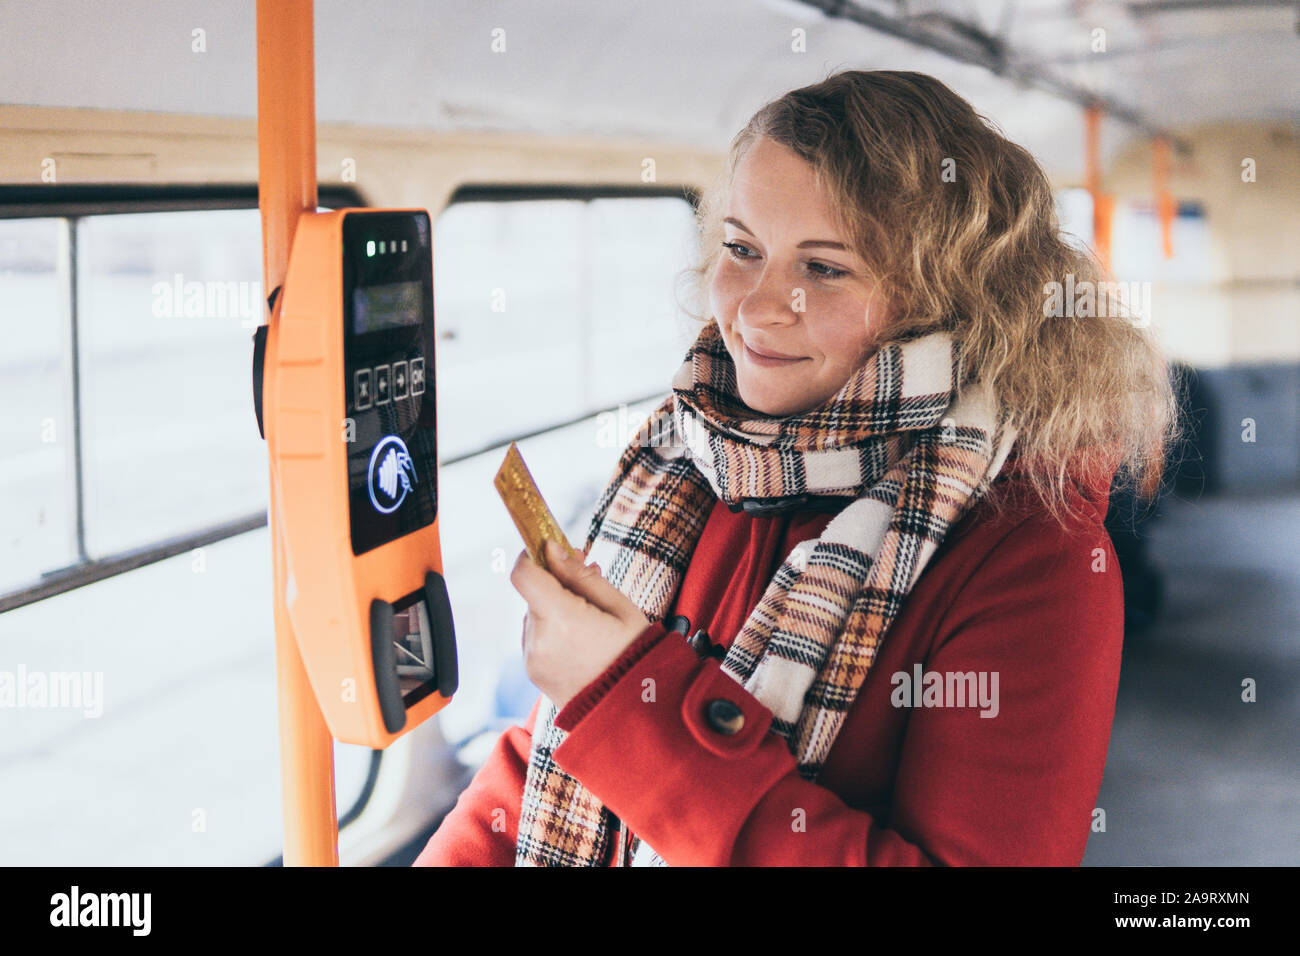 Junge blonde kaukasische Frau bargeldlose Zahlung des öffentlichen Verkehrs Fahrpreises bei automatischen Kontaktlosen Maschine mit einer Karte Stockfoto